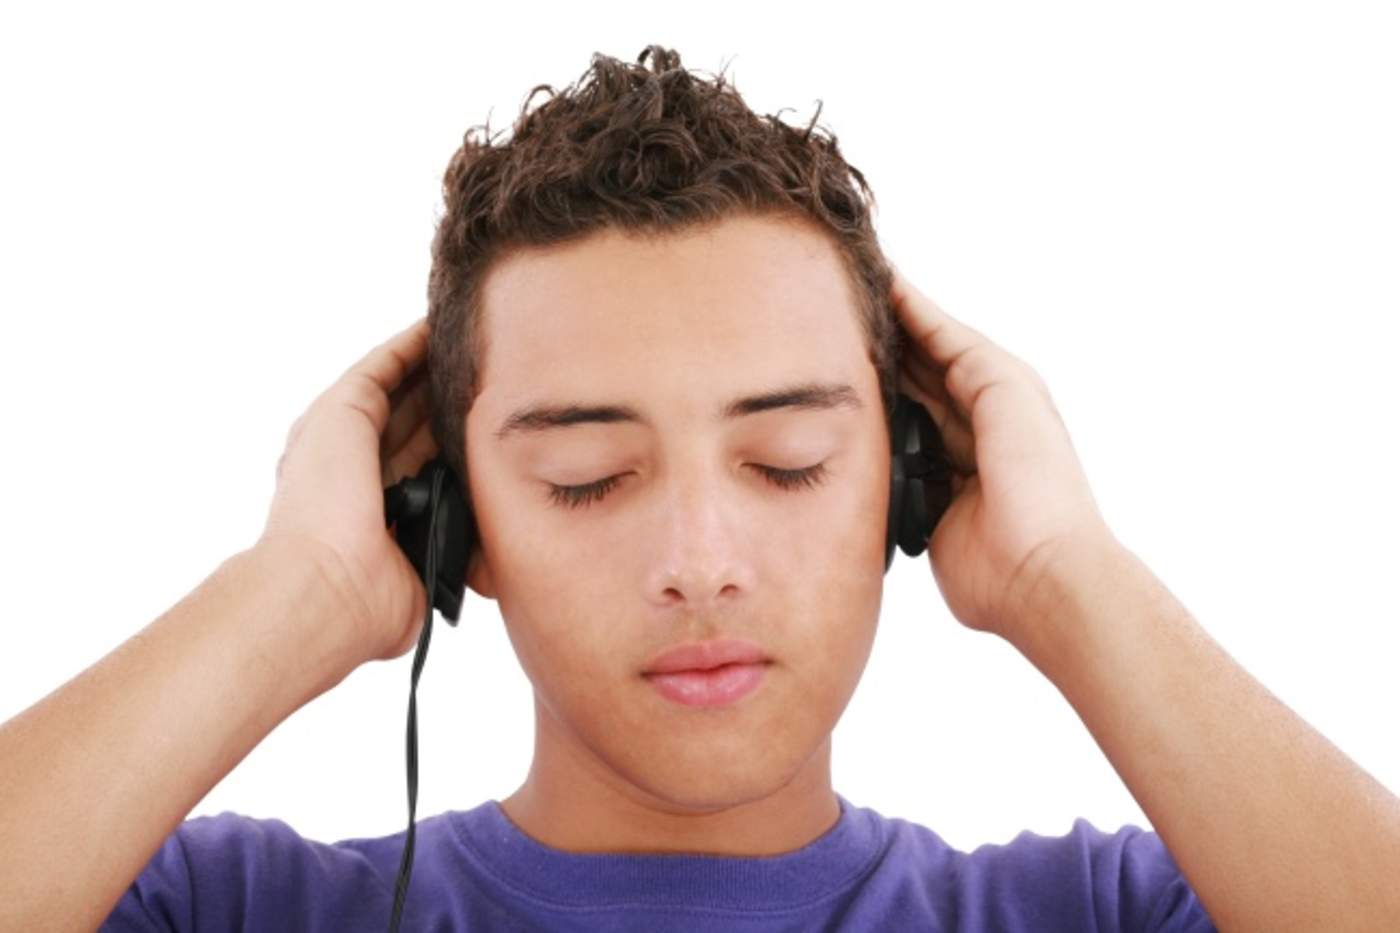 Los jóvenes deben disminuir el uso de audífonos, y evitar escuchar música en niveles de más de 85 decibeles. (ARCHIVO)